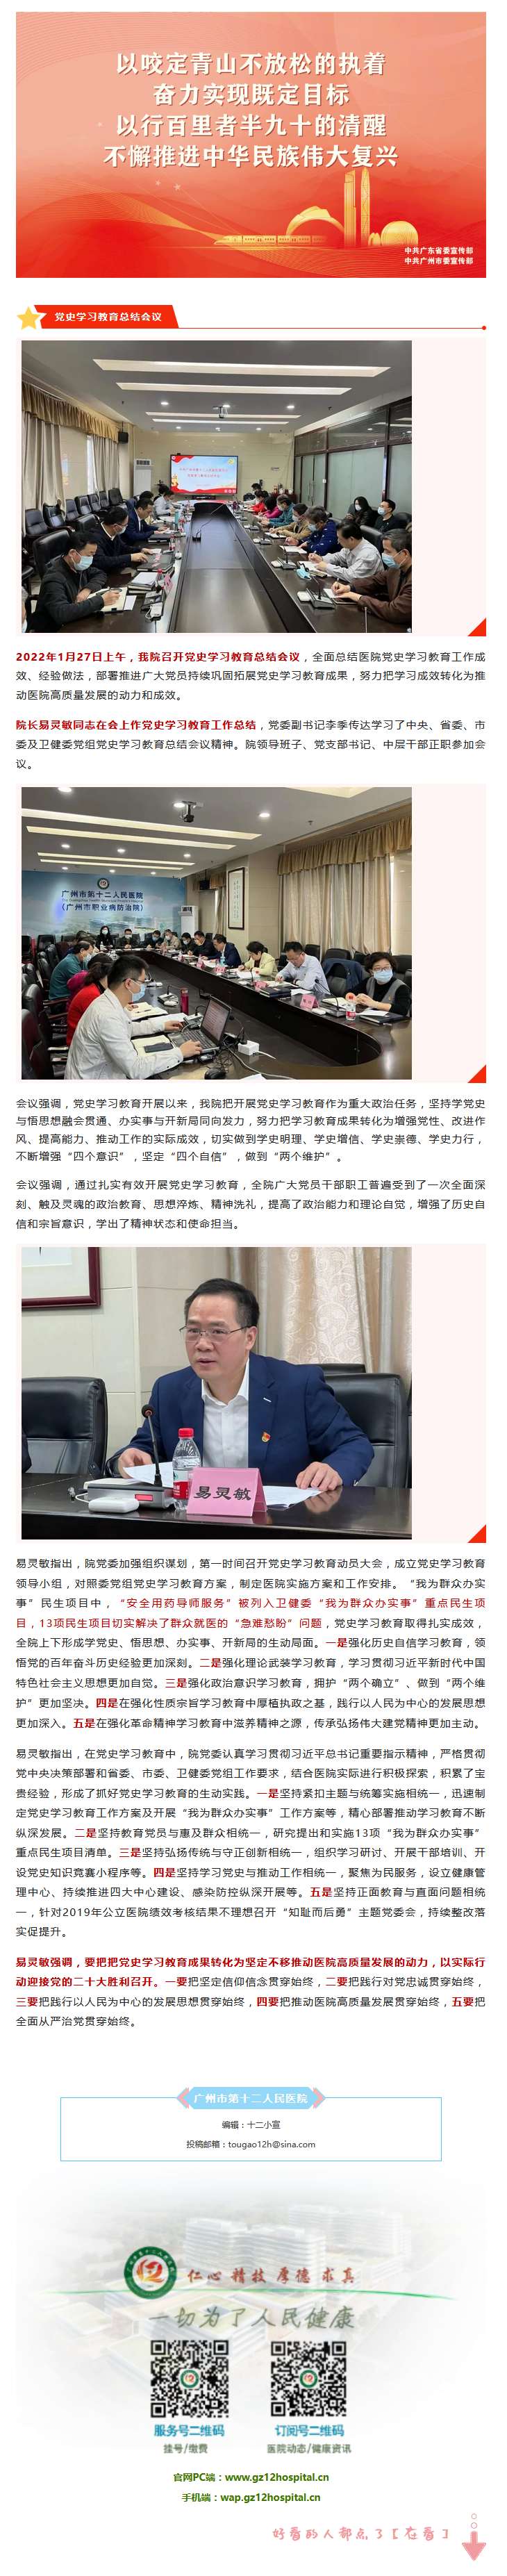 广州市第十二人民医院召开党史学习教育总结会议.png